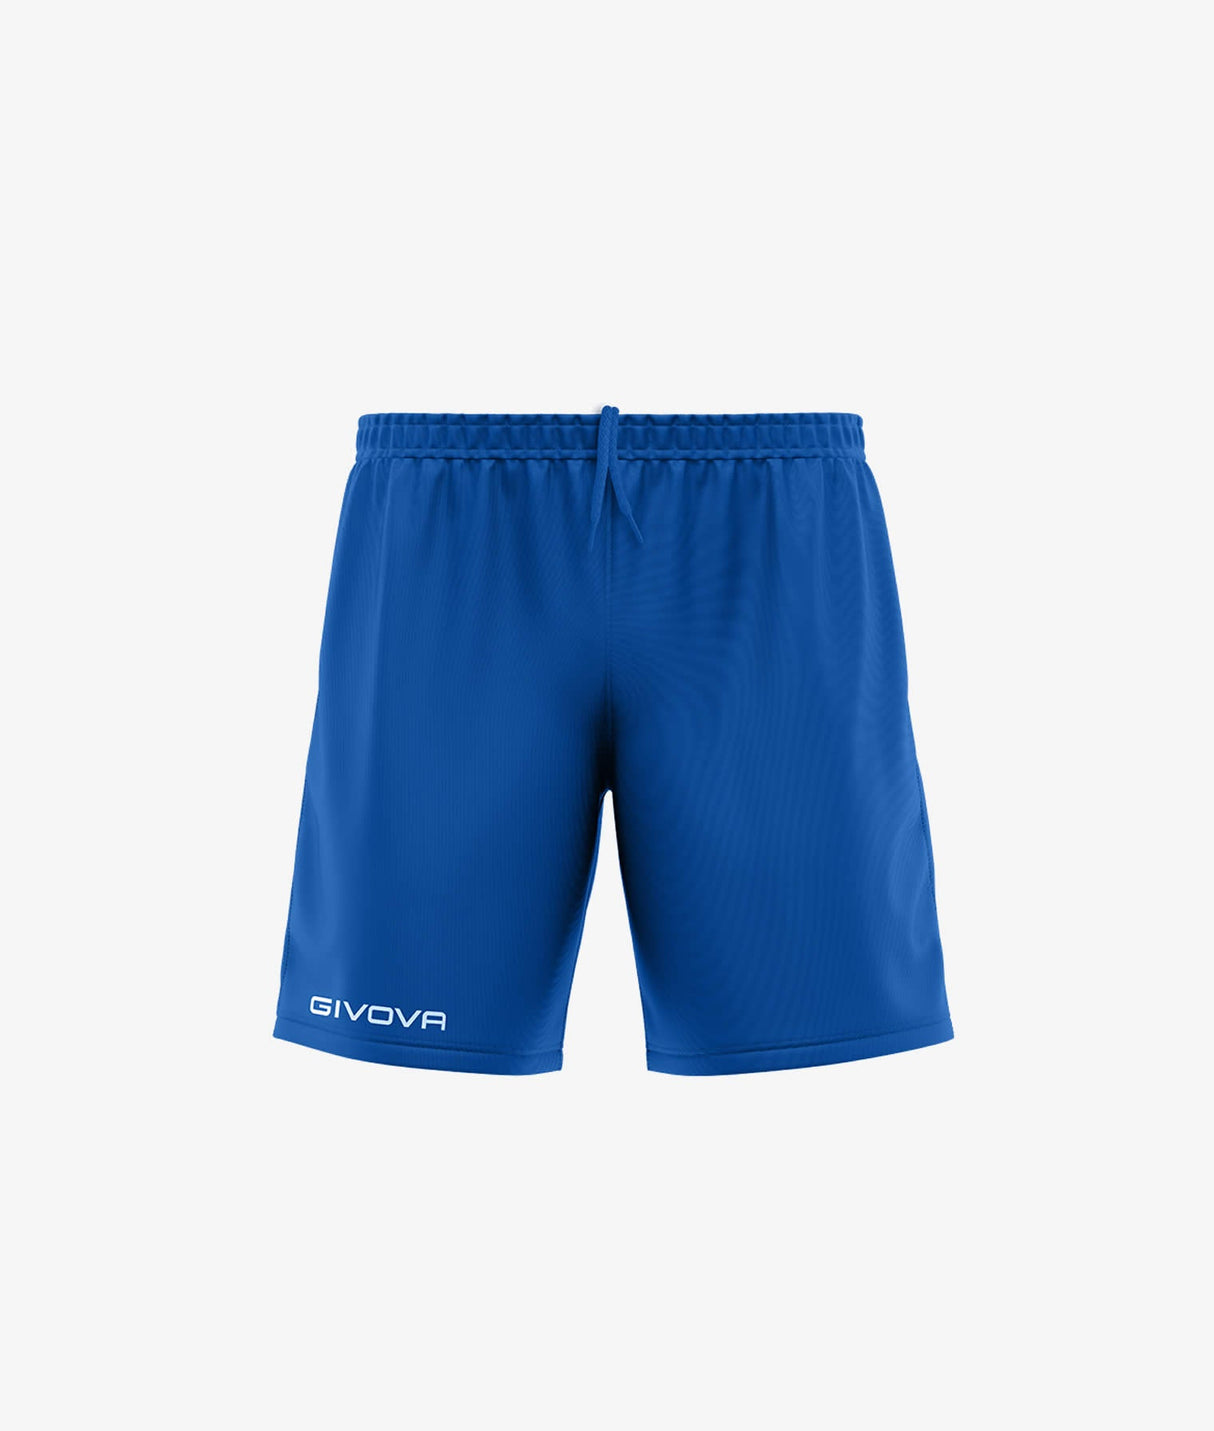 Givova Shorts ONE - königsblau